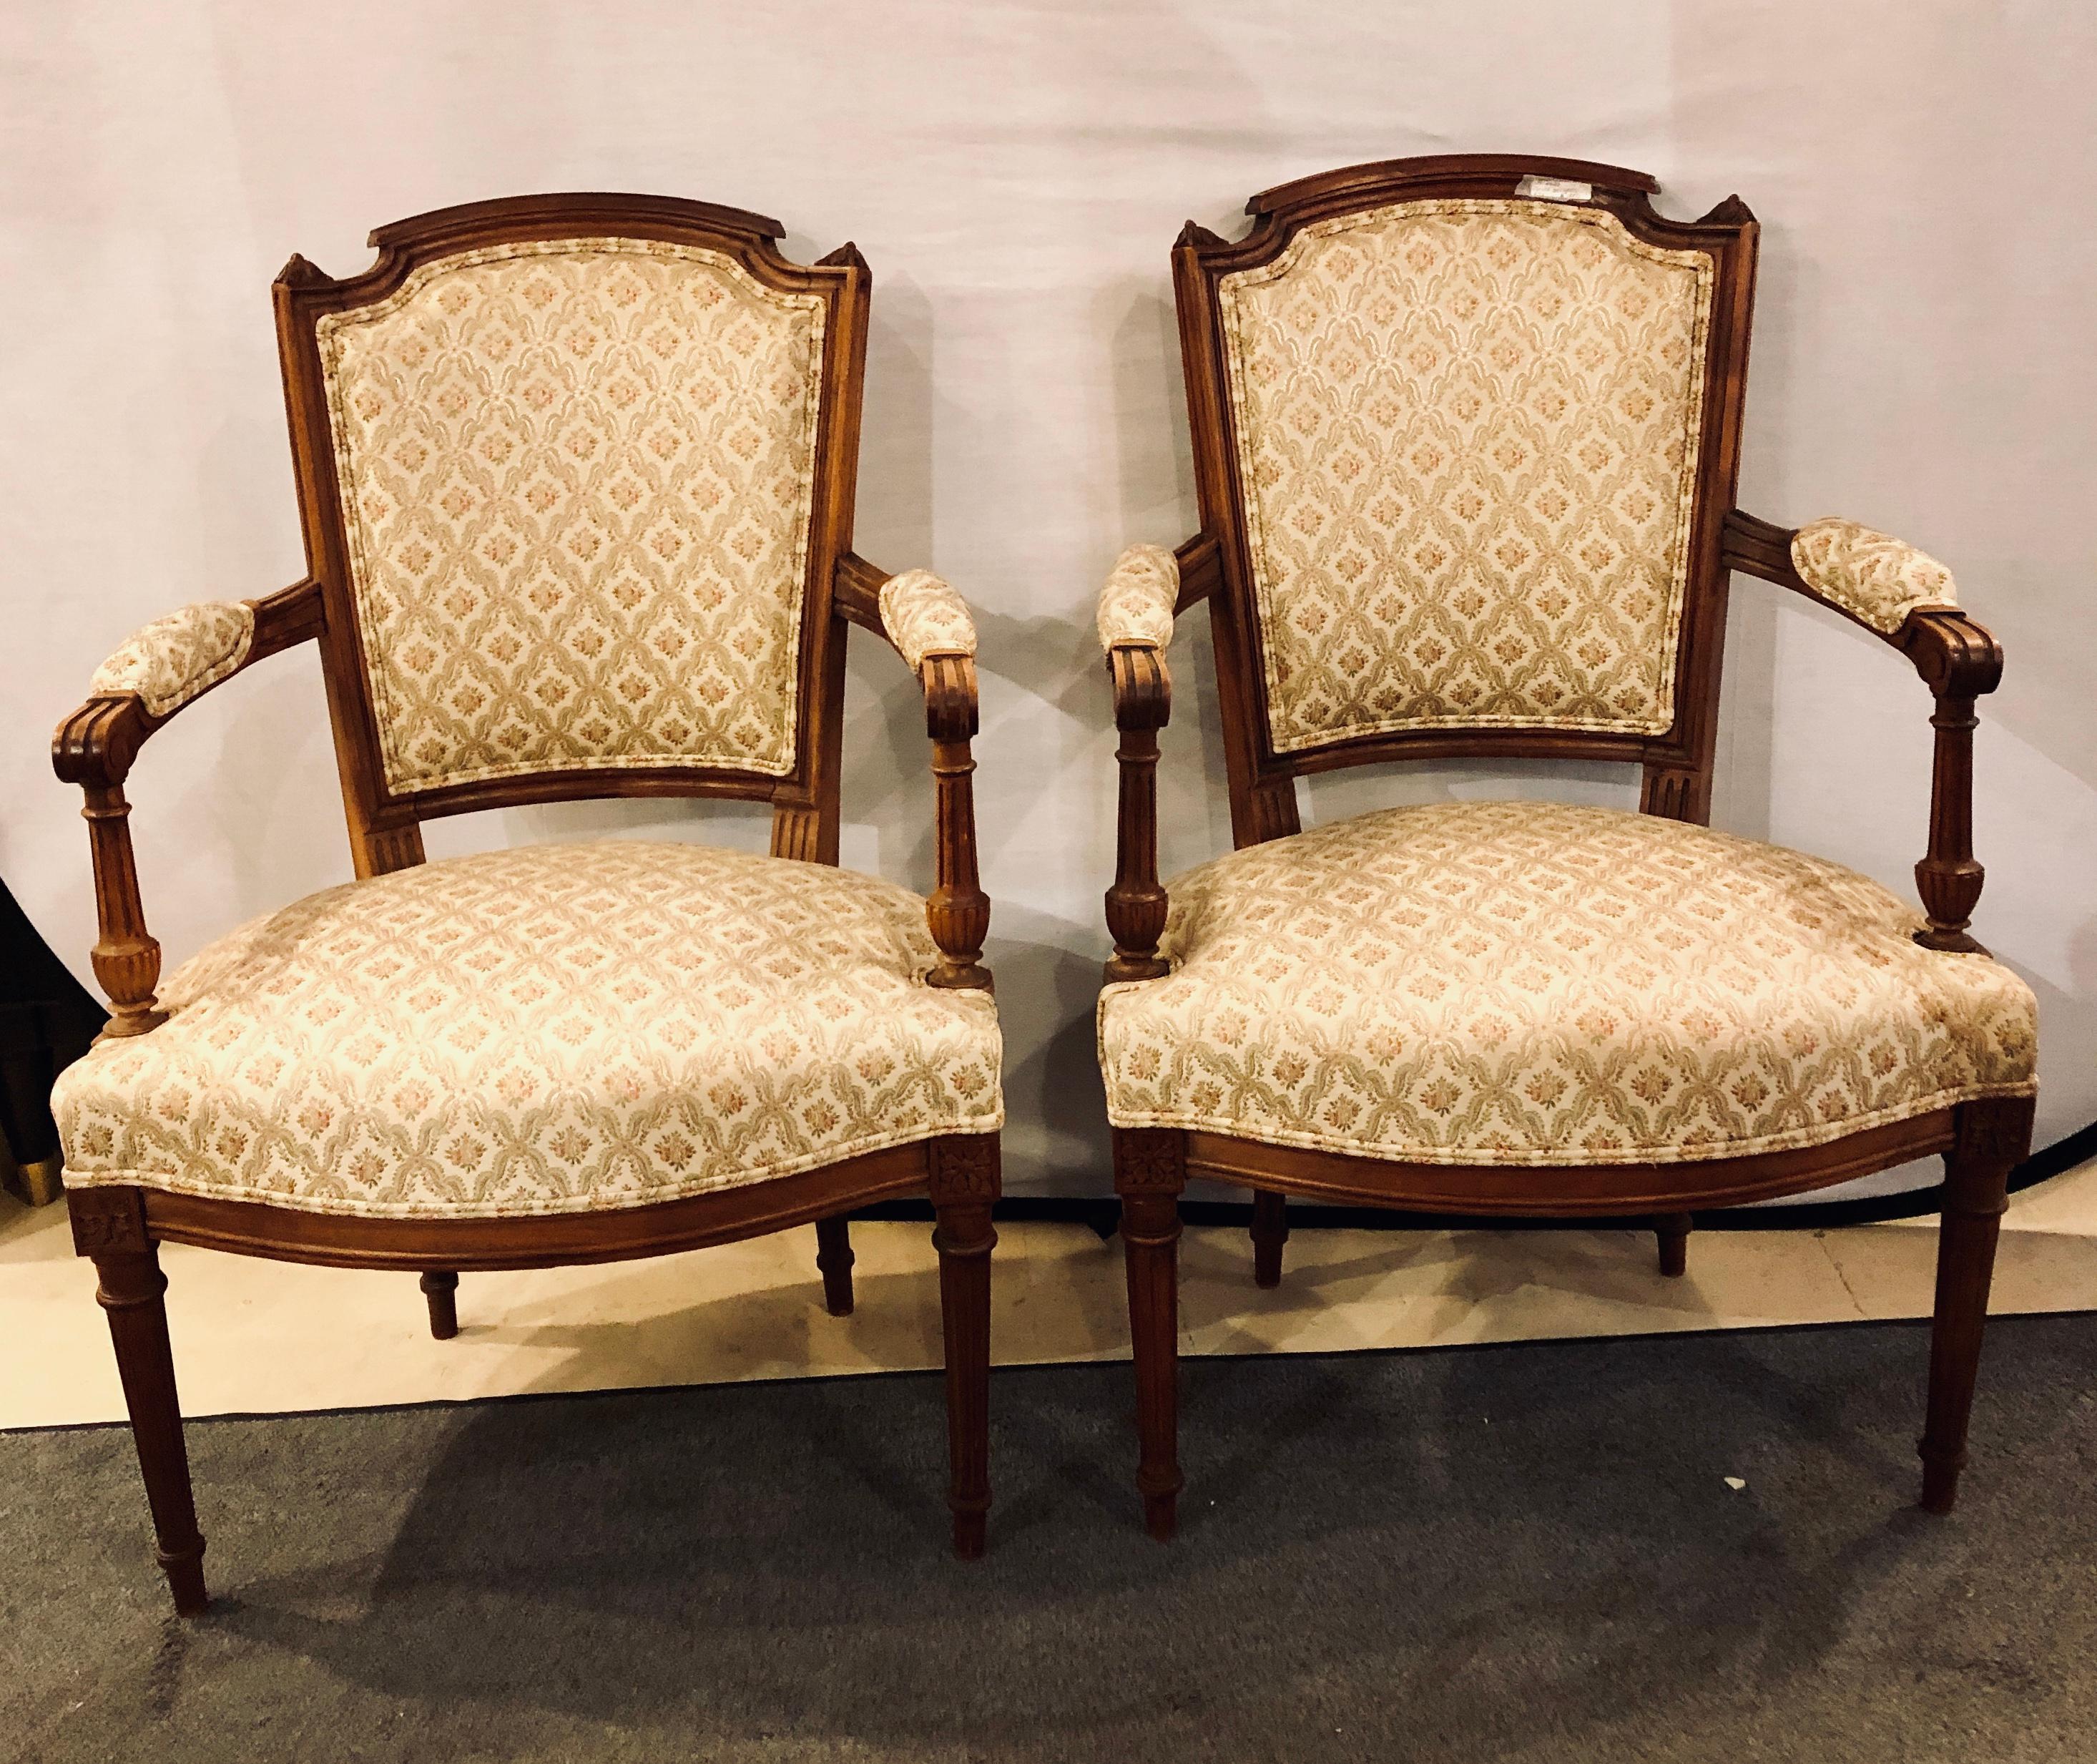 Une paire de bergères ou fauteuils français de style Louis XVI sculptés, chacun dans un beau tissu avec des lignes sculptées et des bras latéraux ouverts.